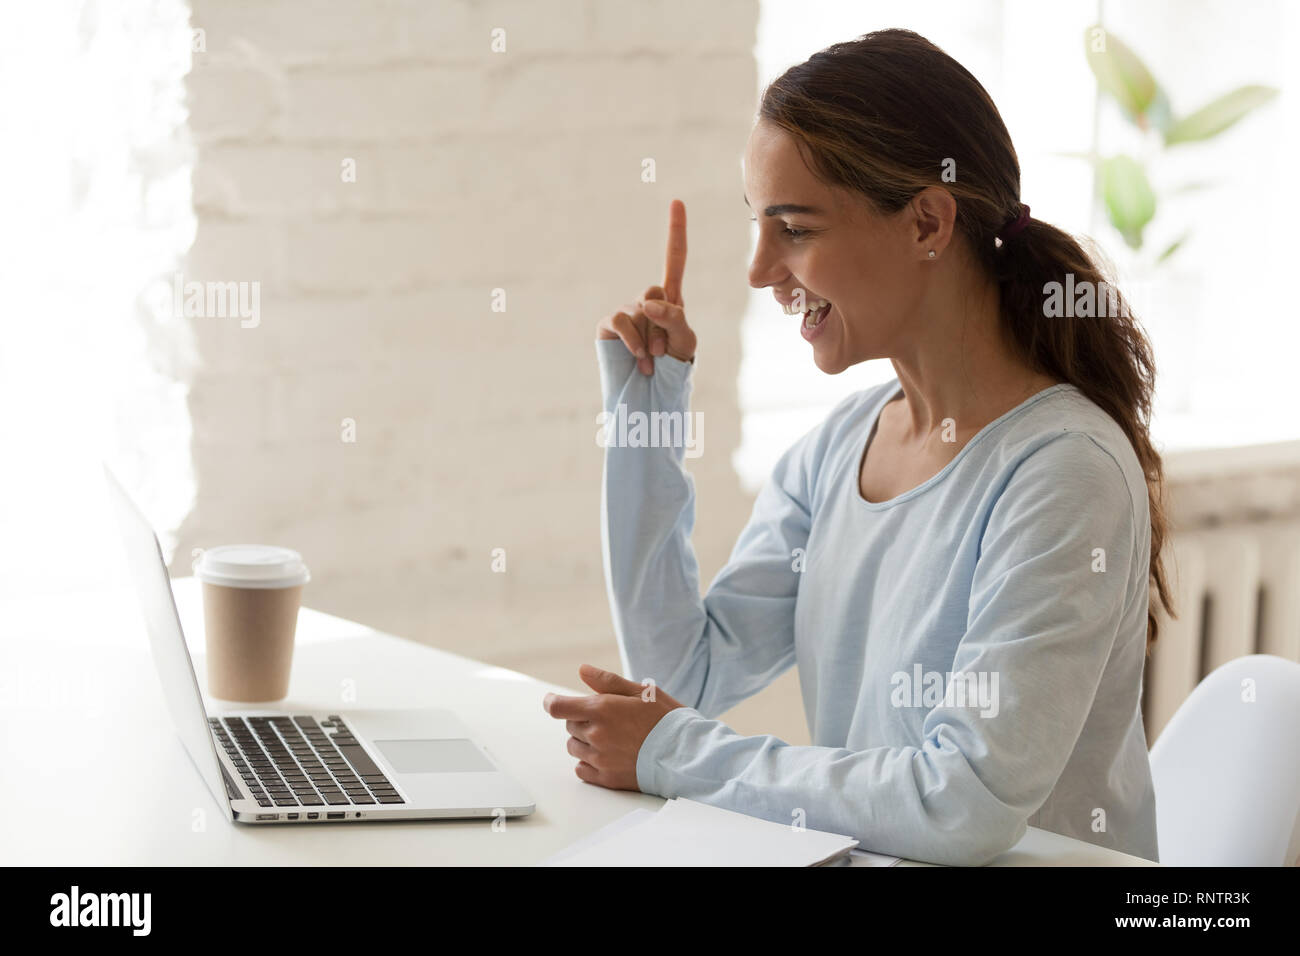 Frauen auf der Suche nach Bildschirm fühlt sich glücklich, die richtige Entscheidung Stockfoto